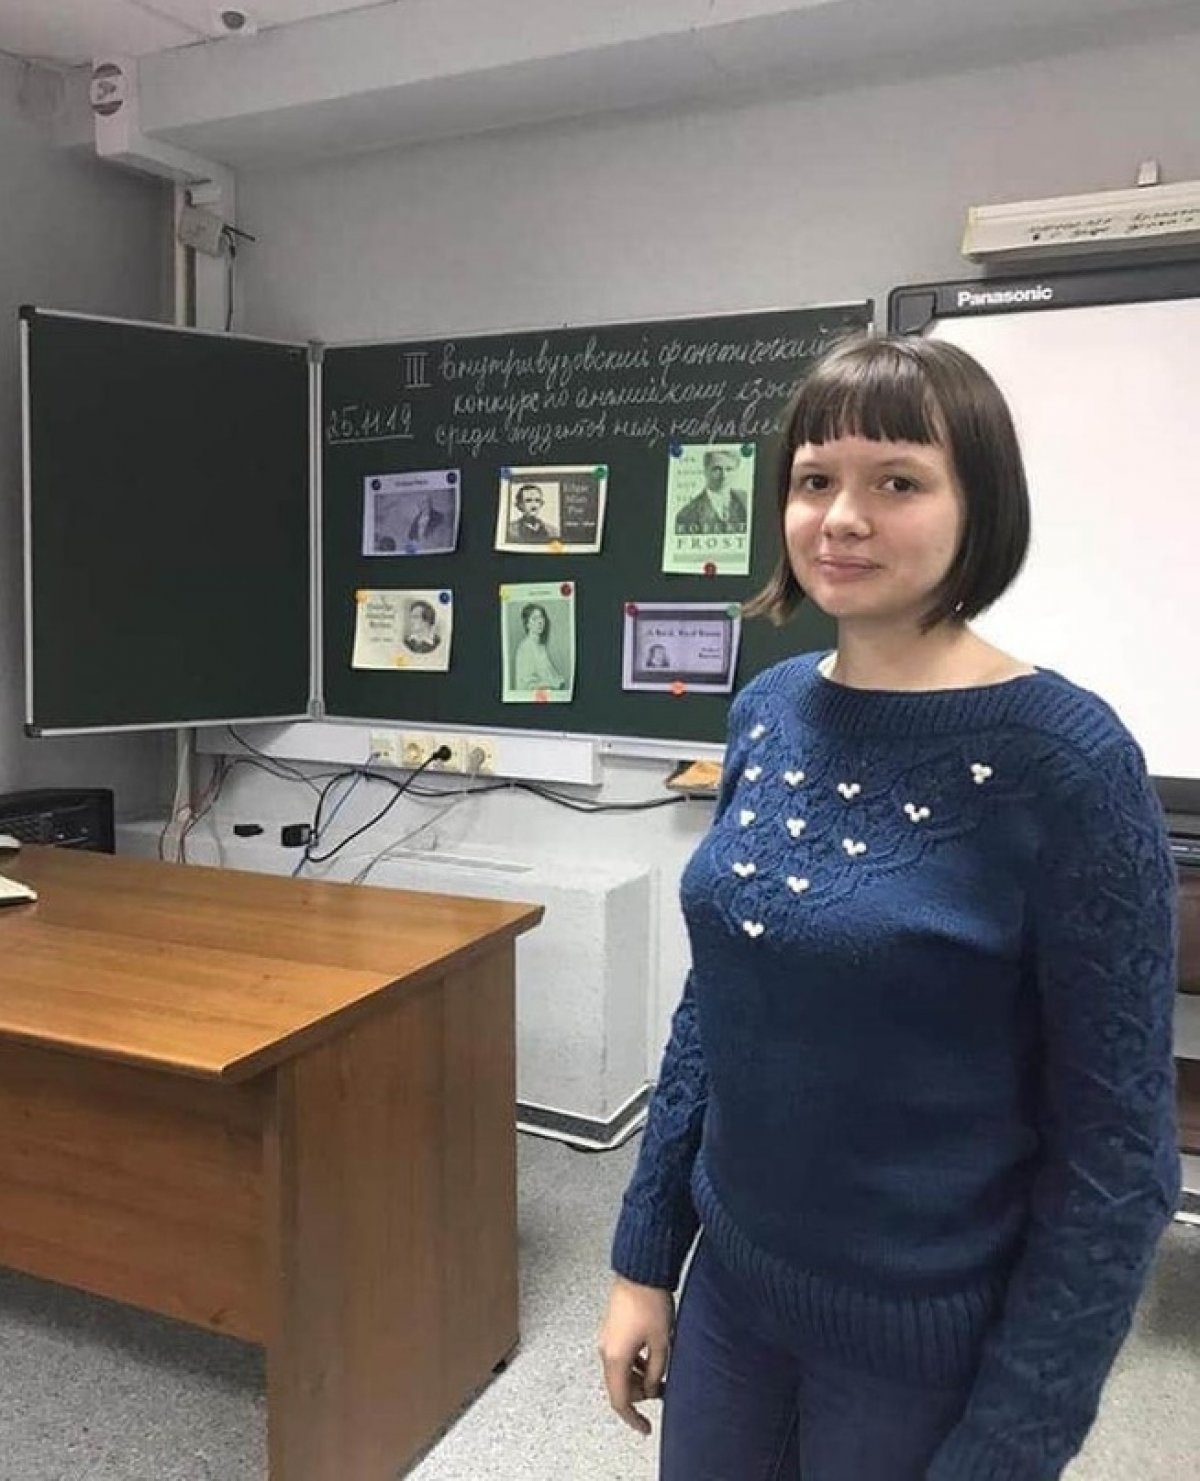 ✅👨‍🎓 Маргарита Туренко: «Поступление в СурГПУ стало одним из лучших решений, которые я когда-либо принимала в своей жизни».